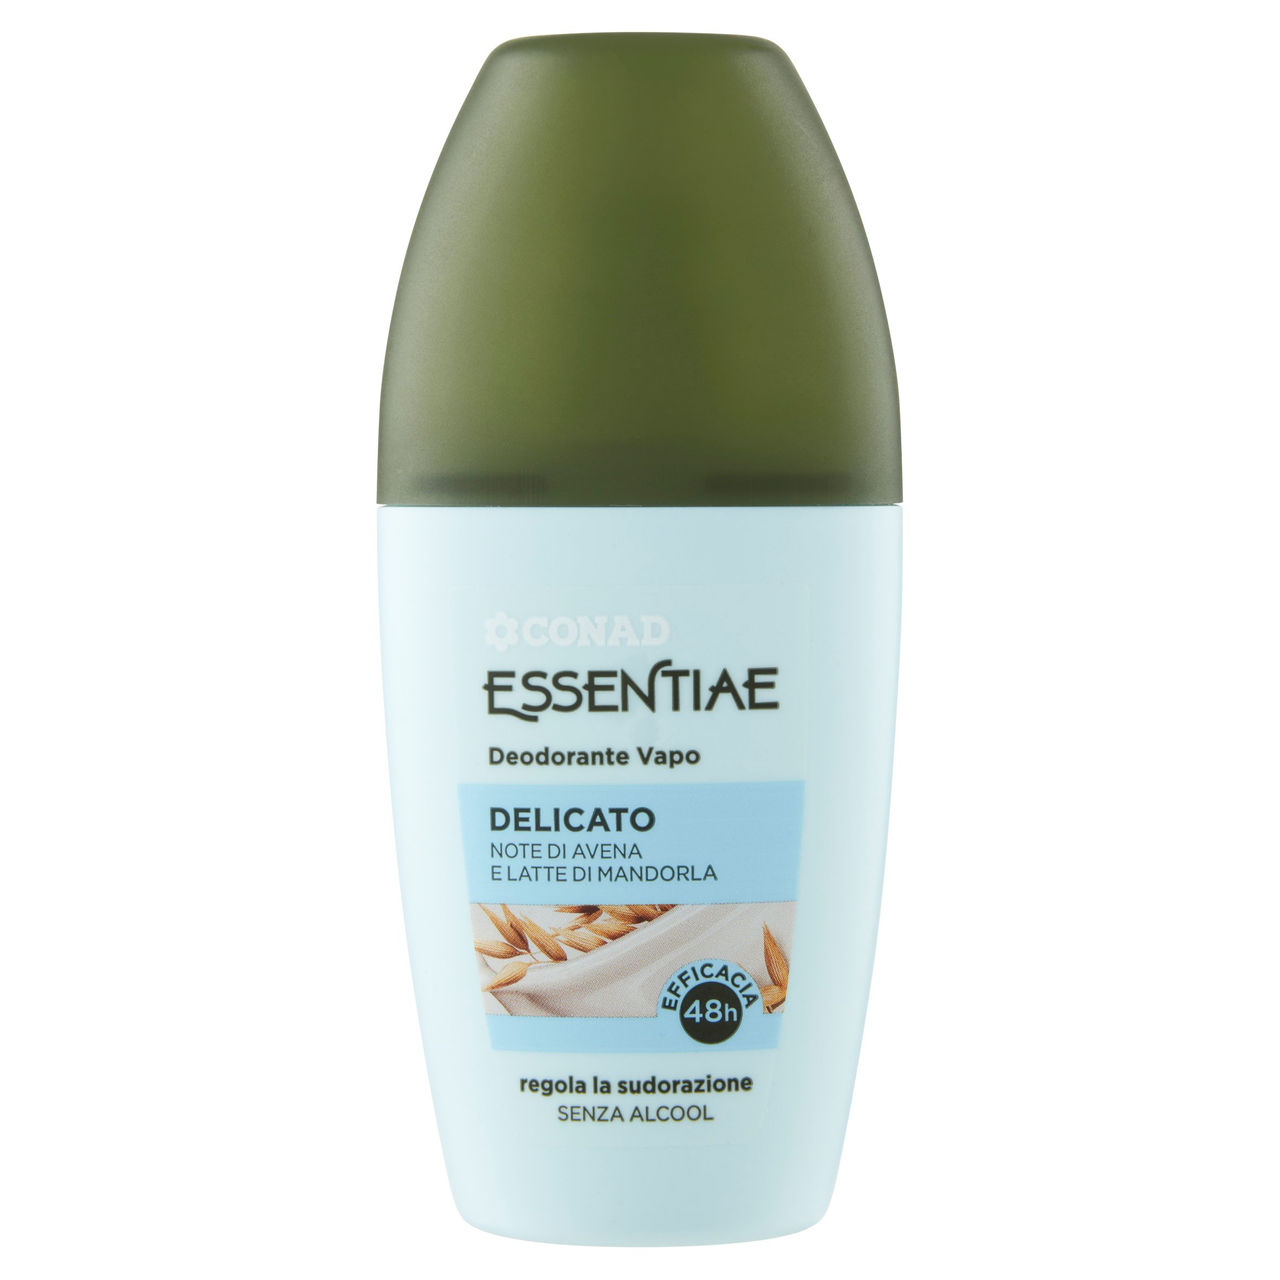 CONAD Essentiae Deodorante Vapo Delicato 75 ml